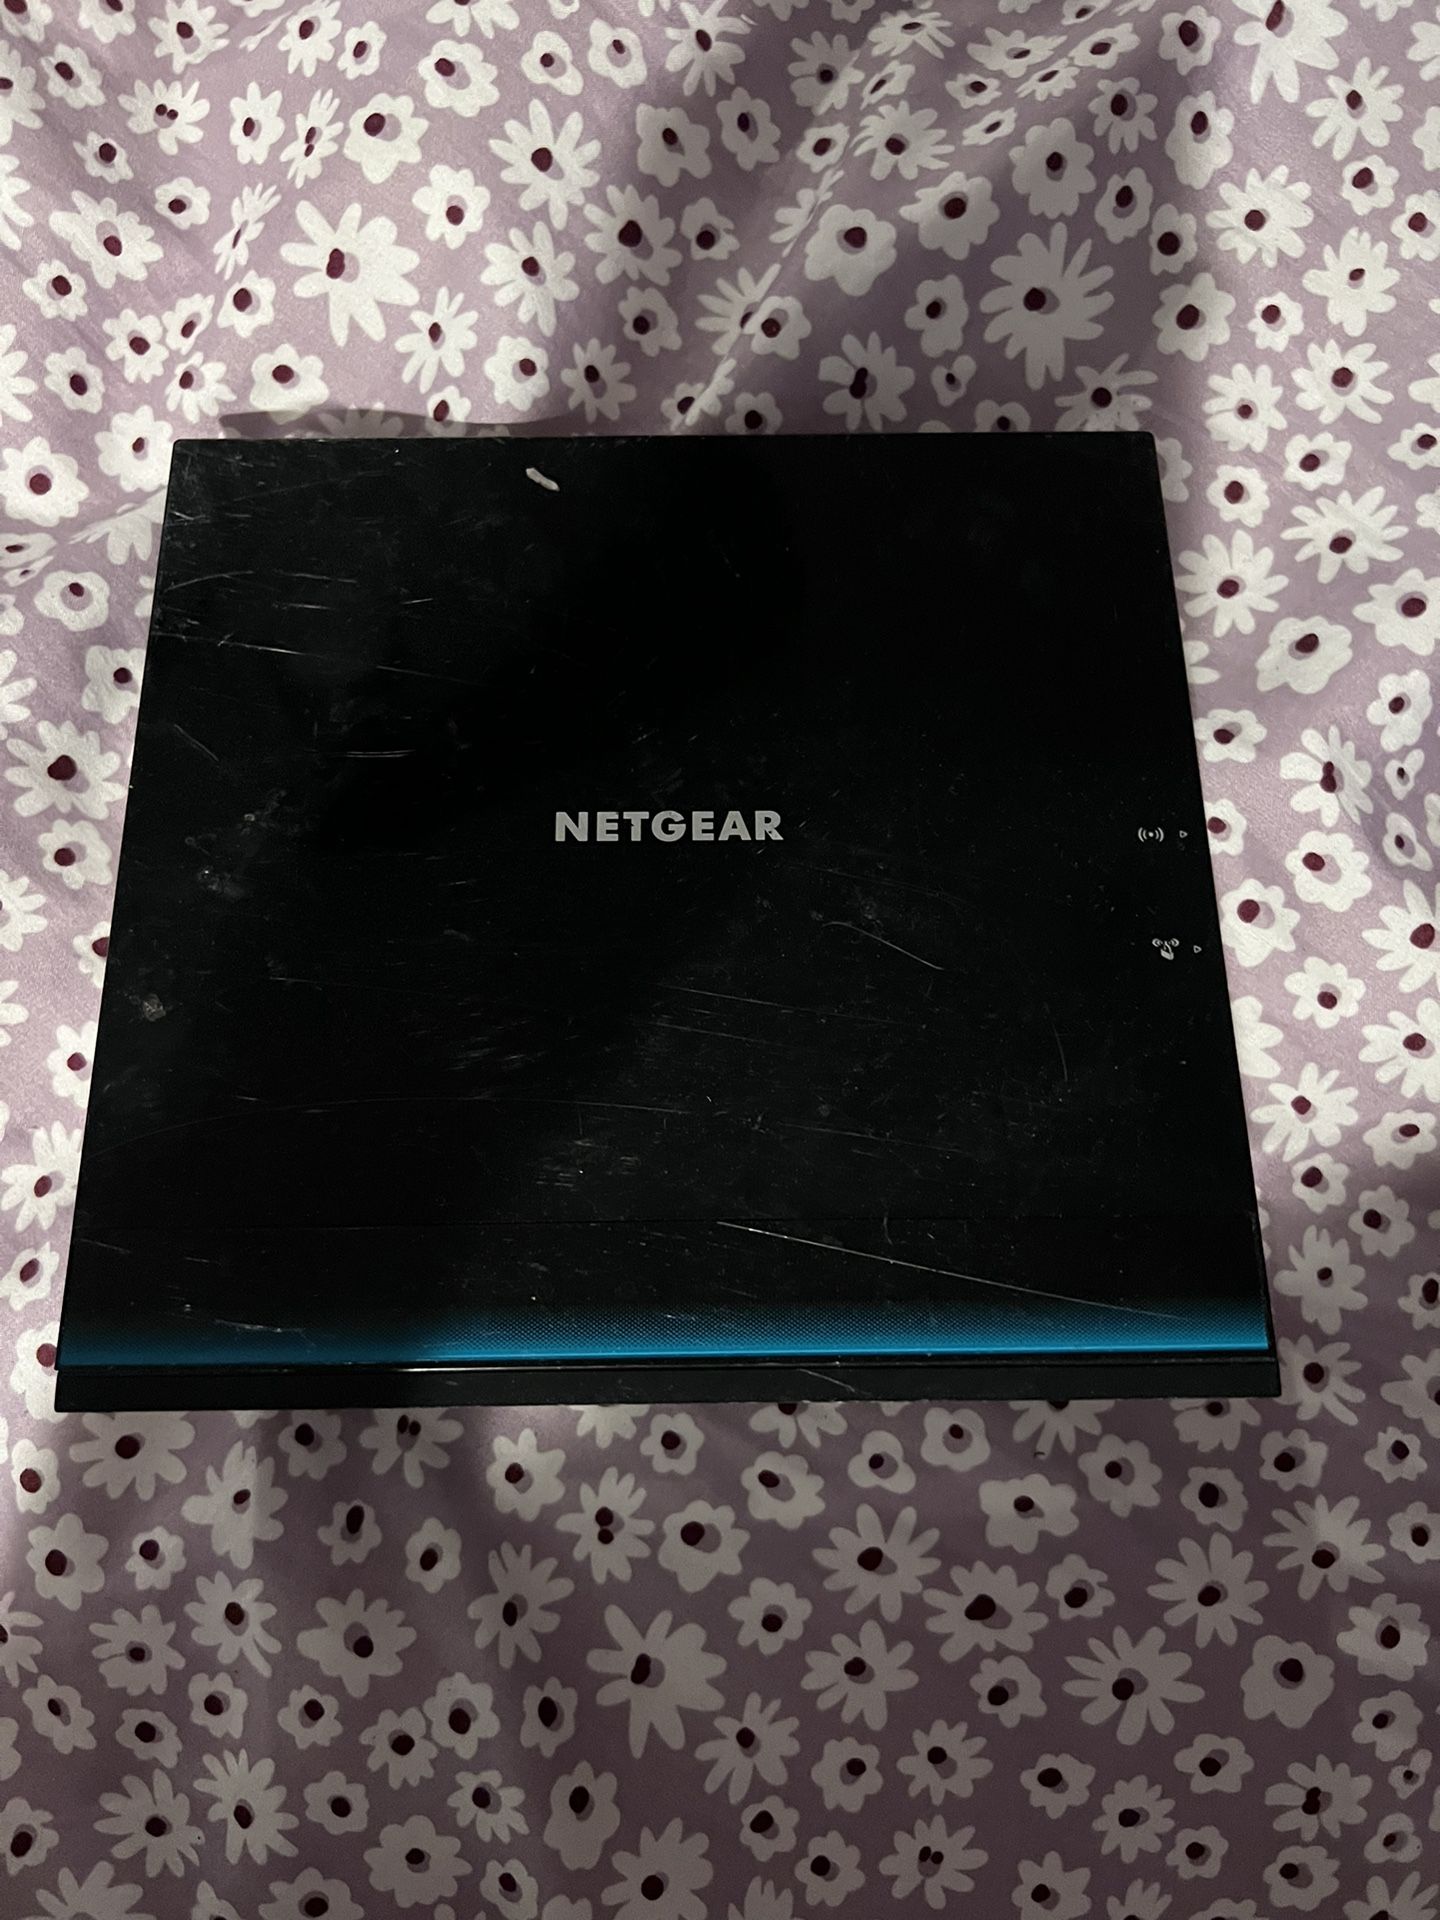 NetGear Wifi Router R6100